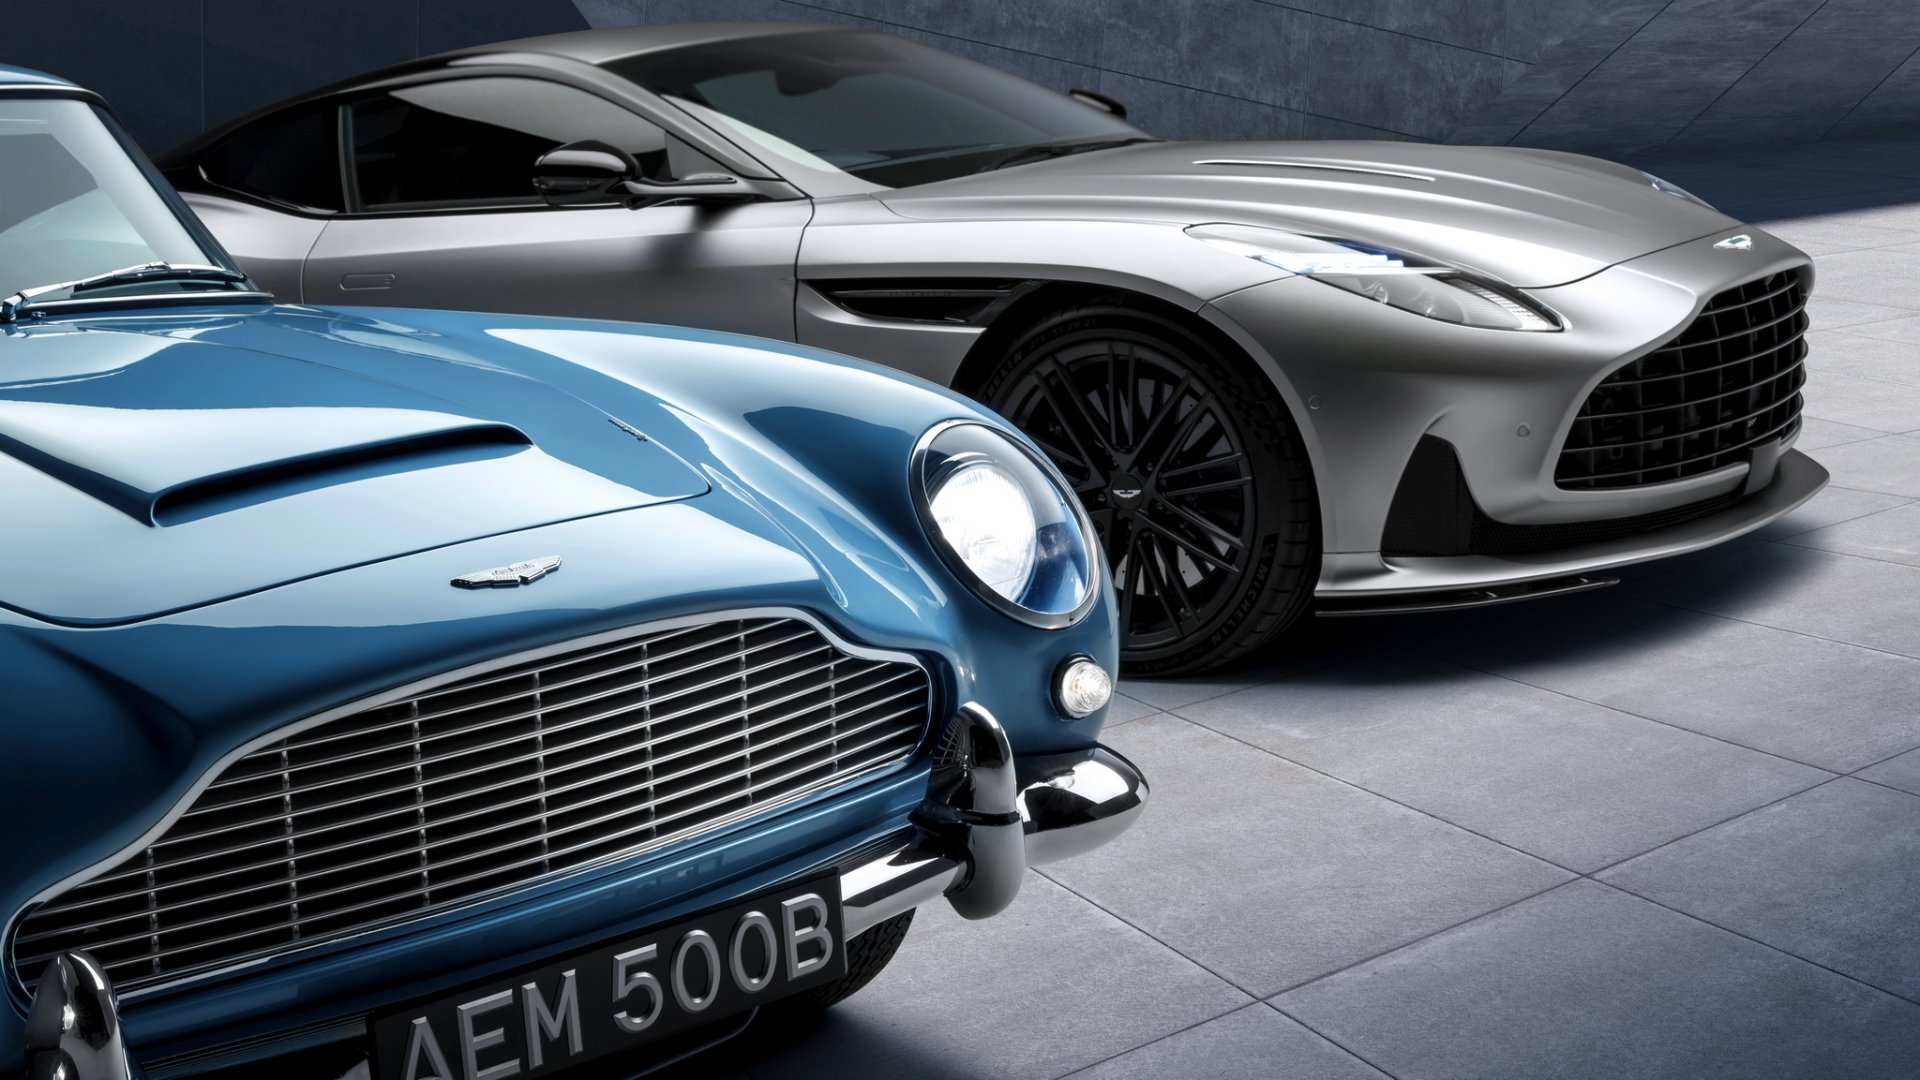 Aston Martin ฉลองครบรอบ 60 ปี DB5 หนึ่งในรถตำนานอันทรงคุณค่า...